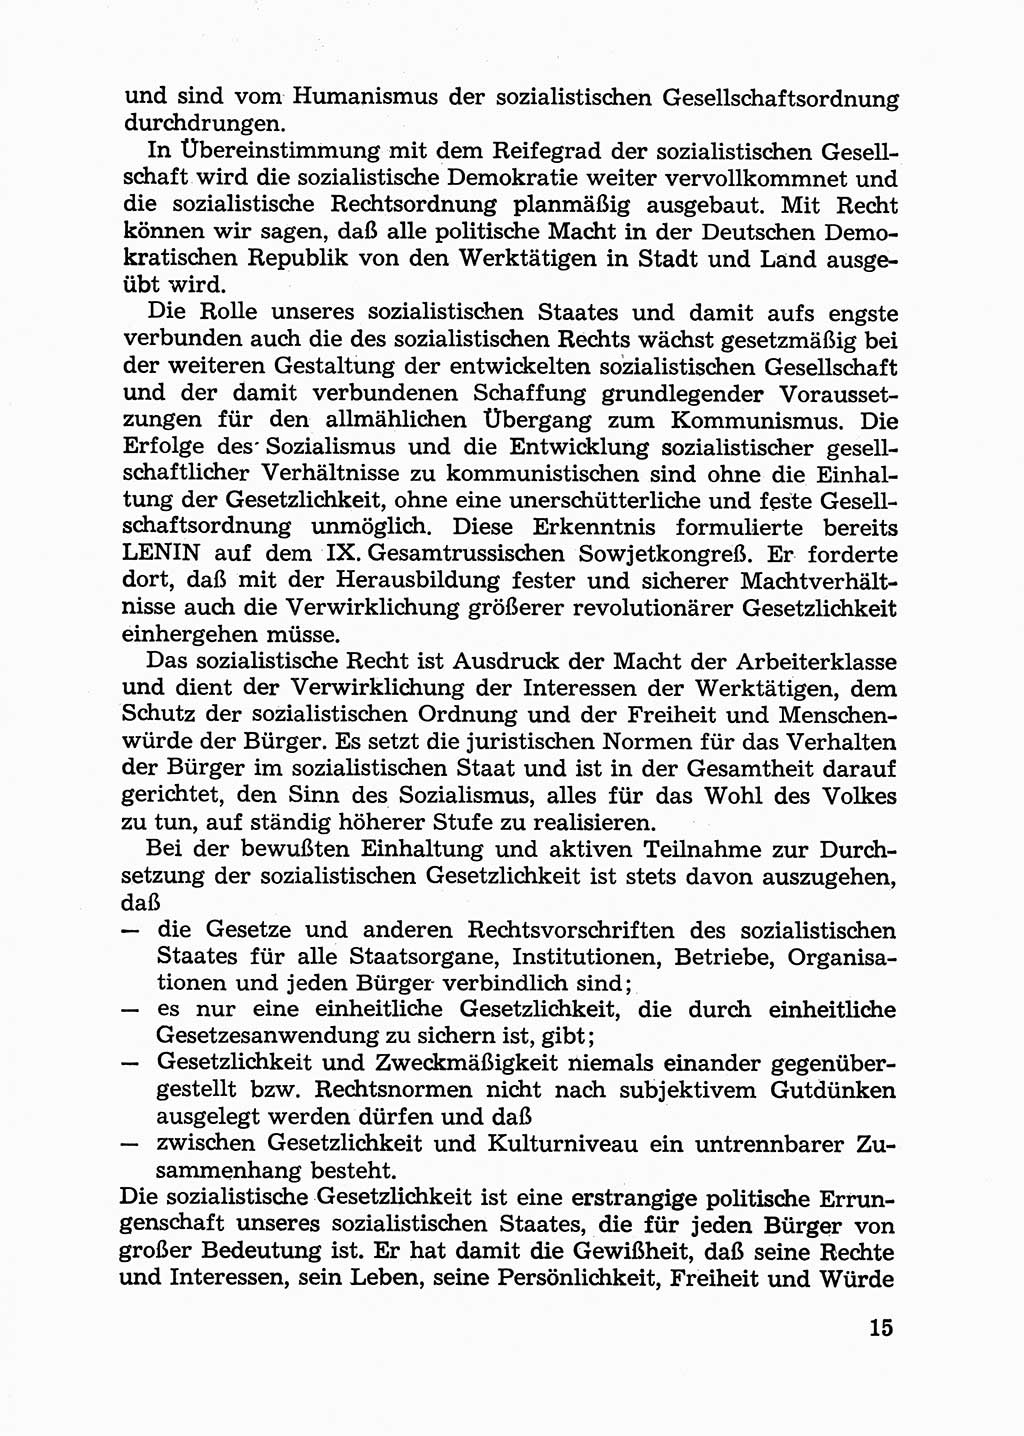 Handbuch für Betriebsangehörige, Abteilung Strafvollzug (SV) [Ministerium des Innern (MdI) Deutsche Demokratische Republik (DDR)] 1981, Seite 15 (Hb. BA Abt. SV MdI DDR 1981, S. 15)